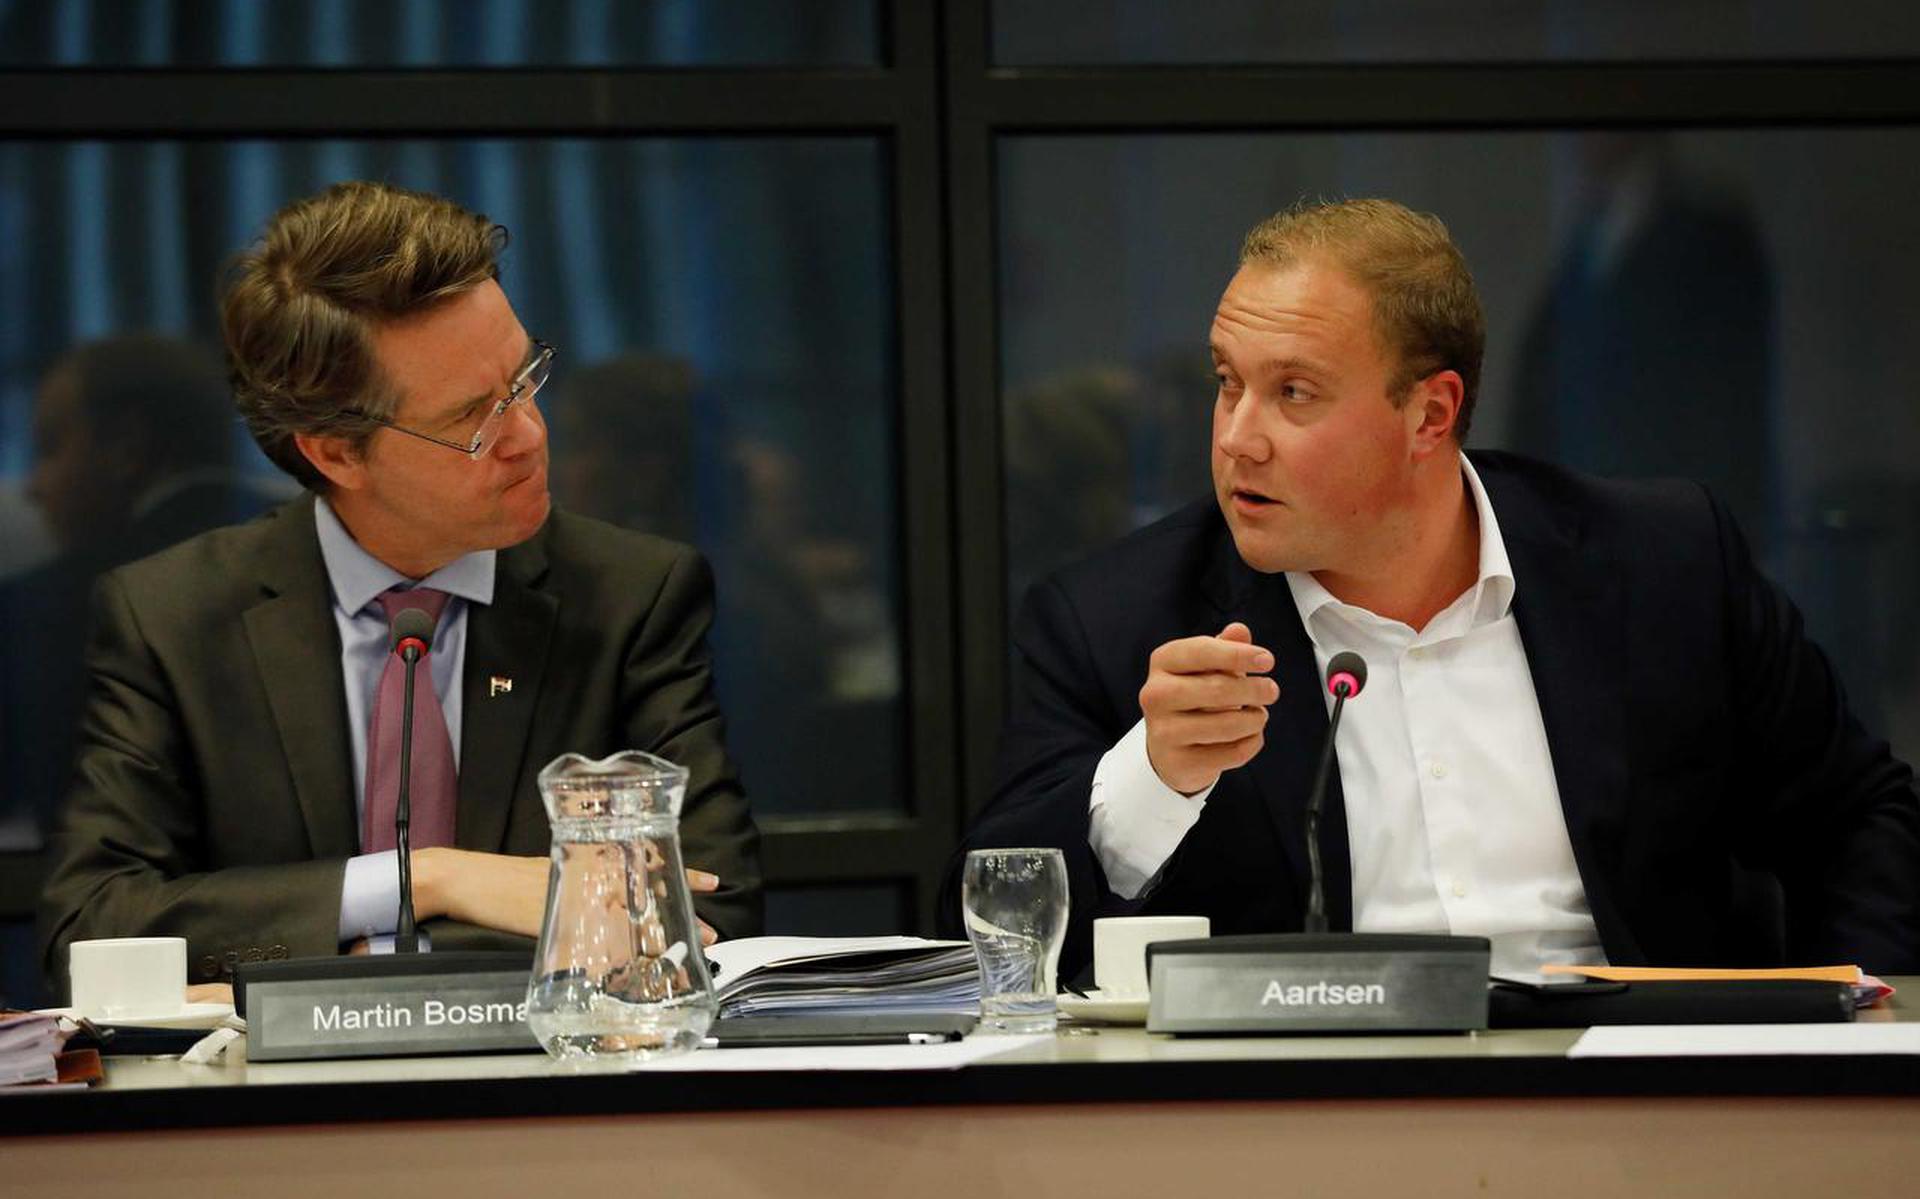 Tweede Kamerlid Martin Bosma (links) tijdens de behandeling van de cultuurbegroting. Rechts van hem Thierry Aartsen, cultuurwoordvoerder voor de VVD.
